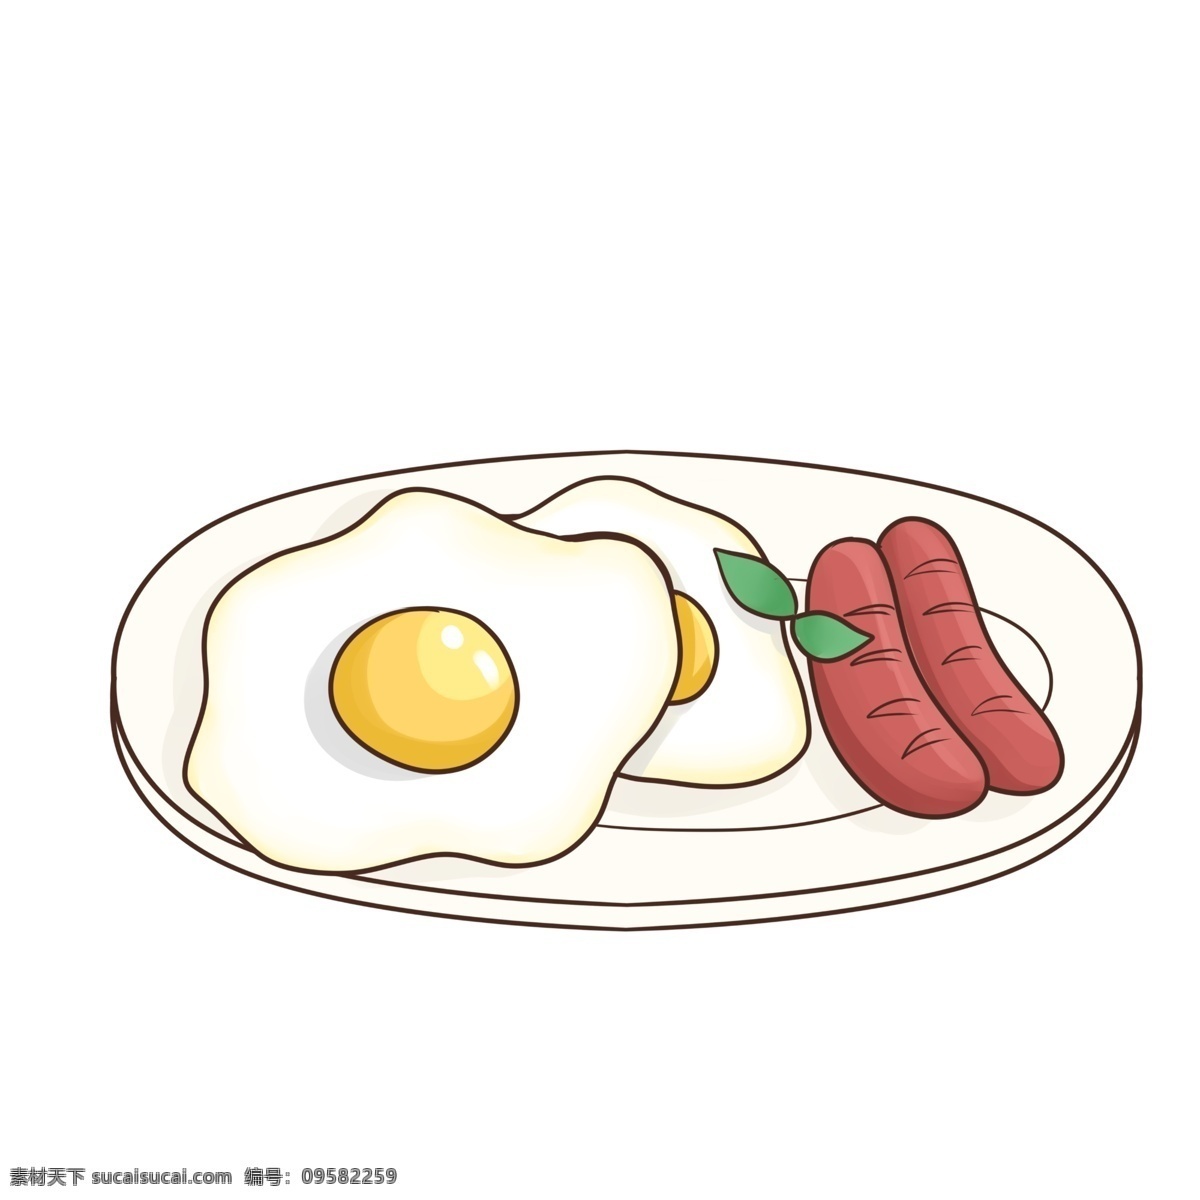 可爱 温馨 早餐 荷包蛋 热狗 插画 鸡蛋 烤肠 绿叶 美食 食物 吃货 薄荷叶 碗碟 西式美食